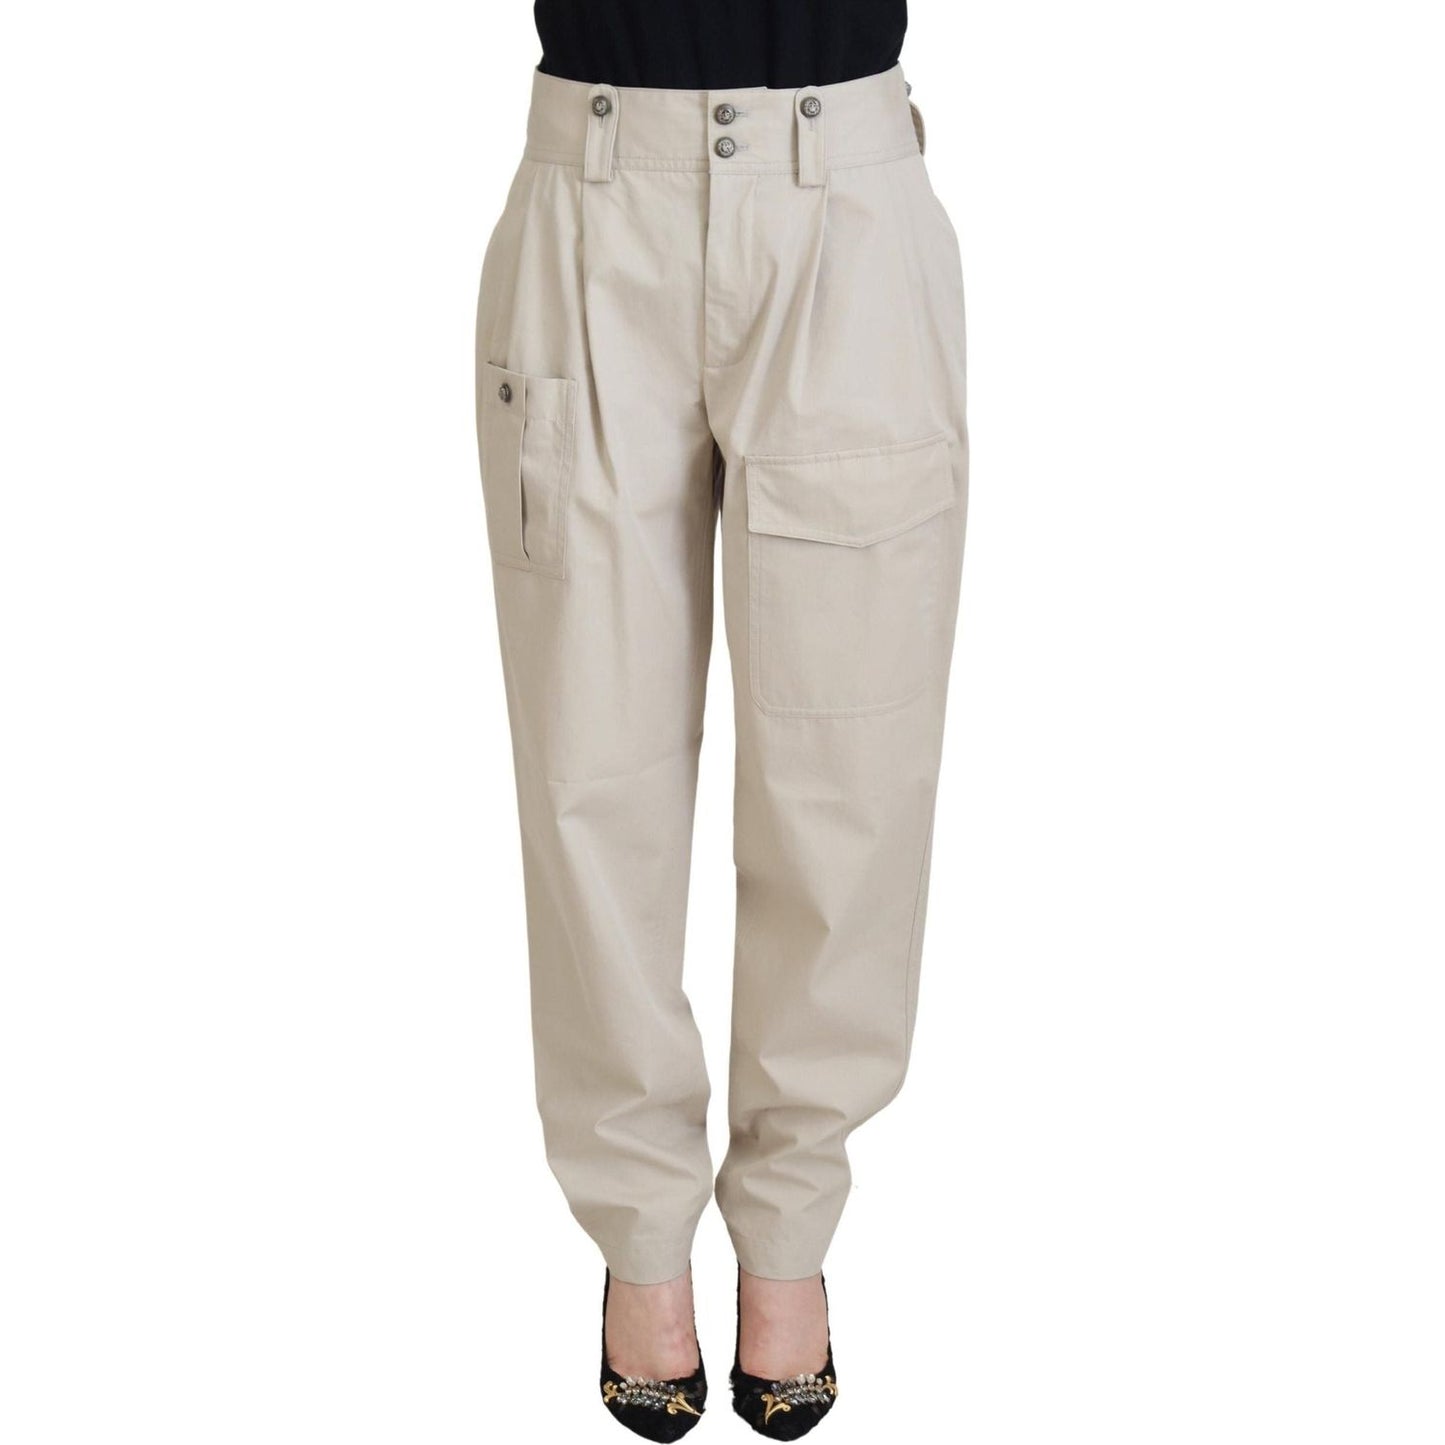 Dolce & Gabbana Elegant Beige Cotton Trousers Jeans & Pants beige-cotton-women-cargo-pants